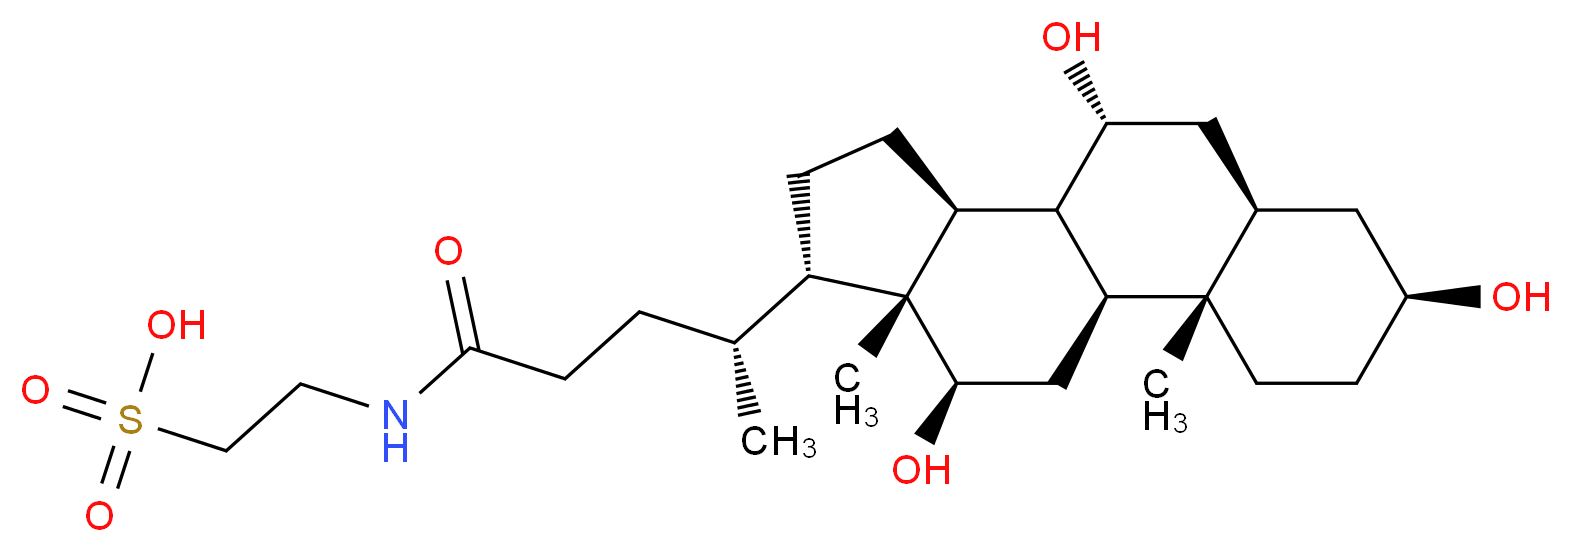 81-24-3 molecular structure